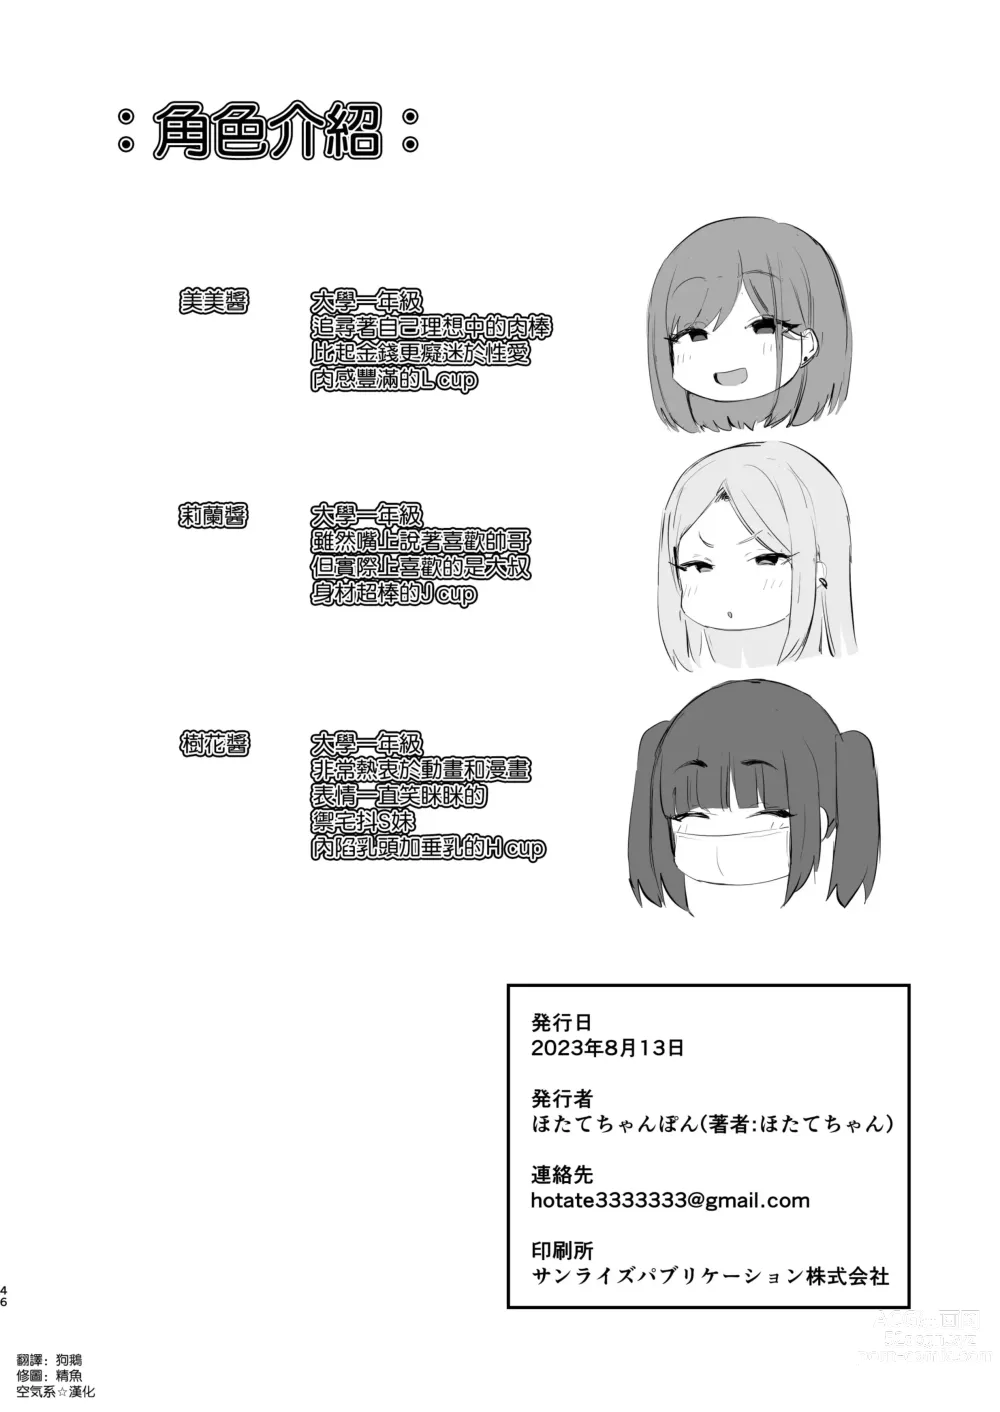 Page 45 of doujinshi Papakatsu JD, Ochinpo Yuuryou Bukken o Mitsukeru.